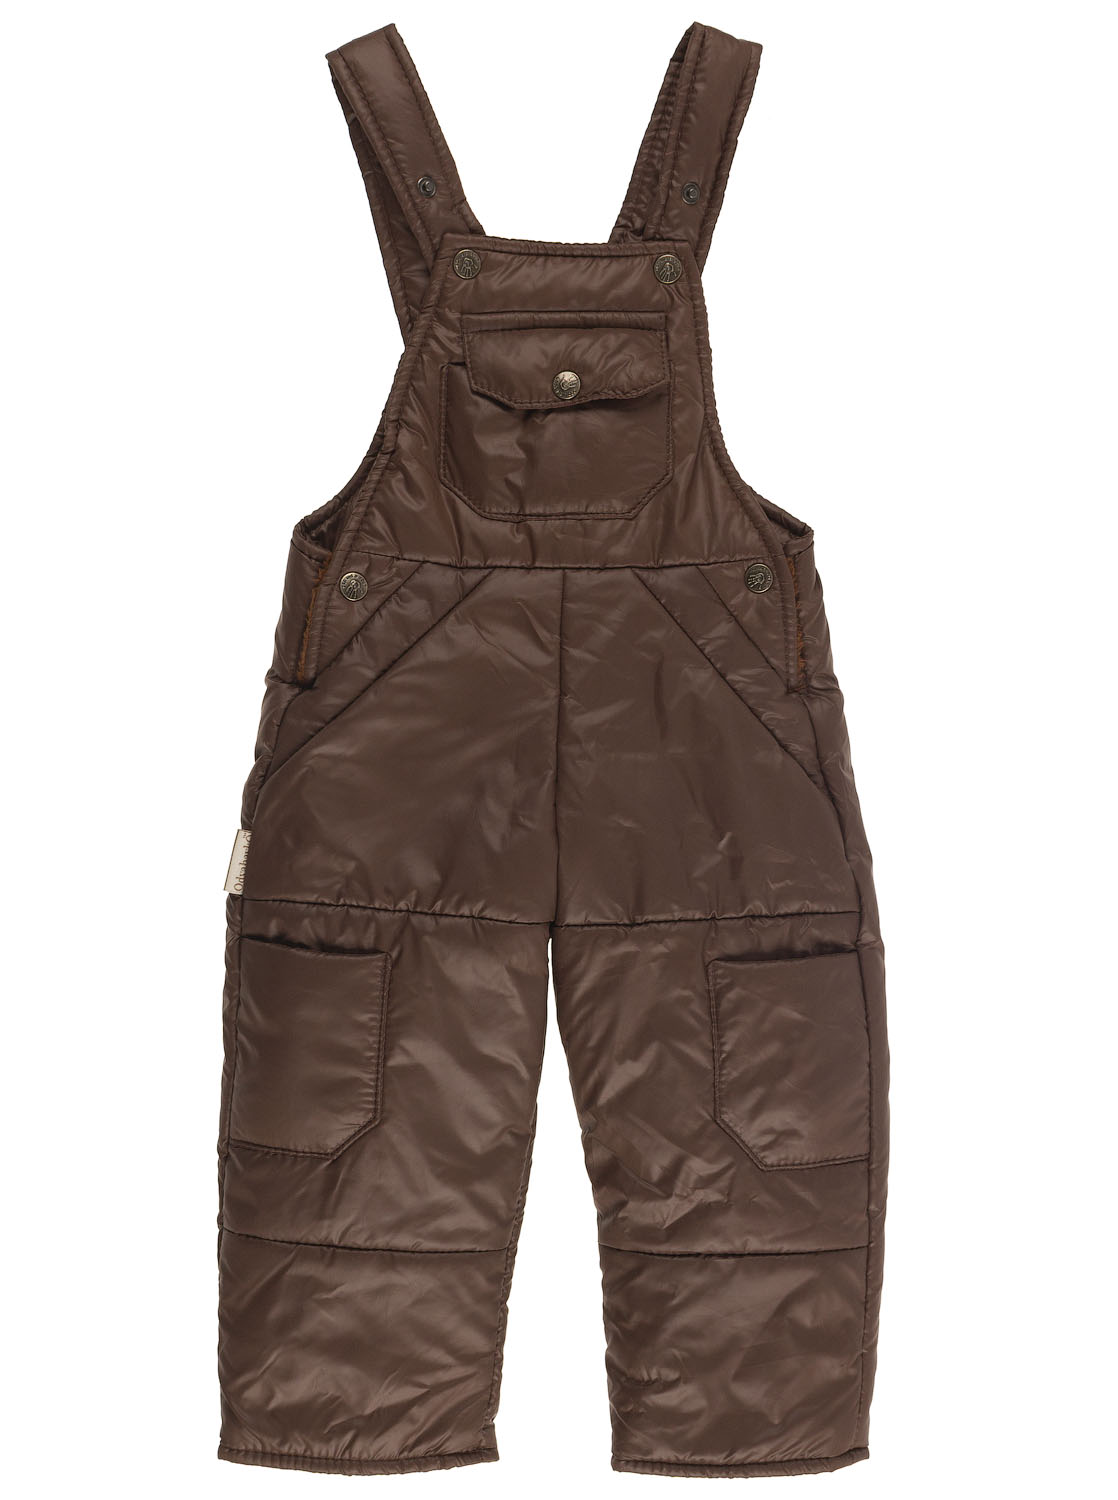 Зимовий напівкомбінезон дитячий Одягайко коричневий 3143 - ціна